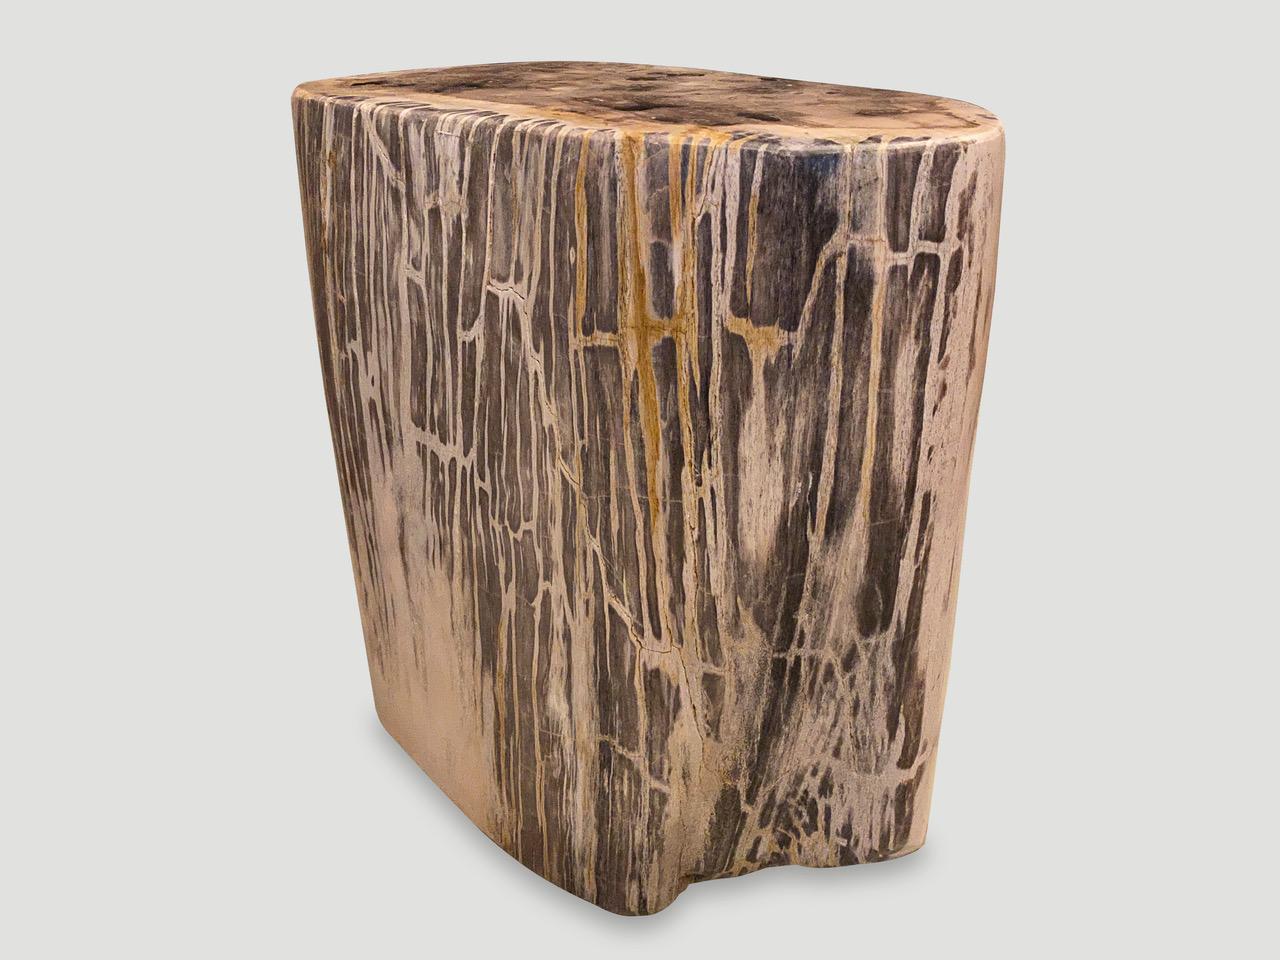 Beeindruckend schöne Grautöne und Markierungen auf diesem hochwertigen Beistelltisch aus versteinertem Holz. Es ist faszinierend, wie Mutter Natur diese exquisiten, 40 Millionen Jahre alten versteinerten Teakholzstämme mit solch kontrastreichen